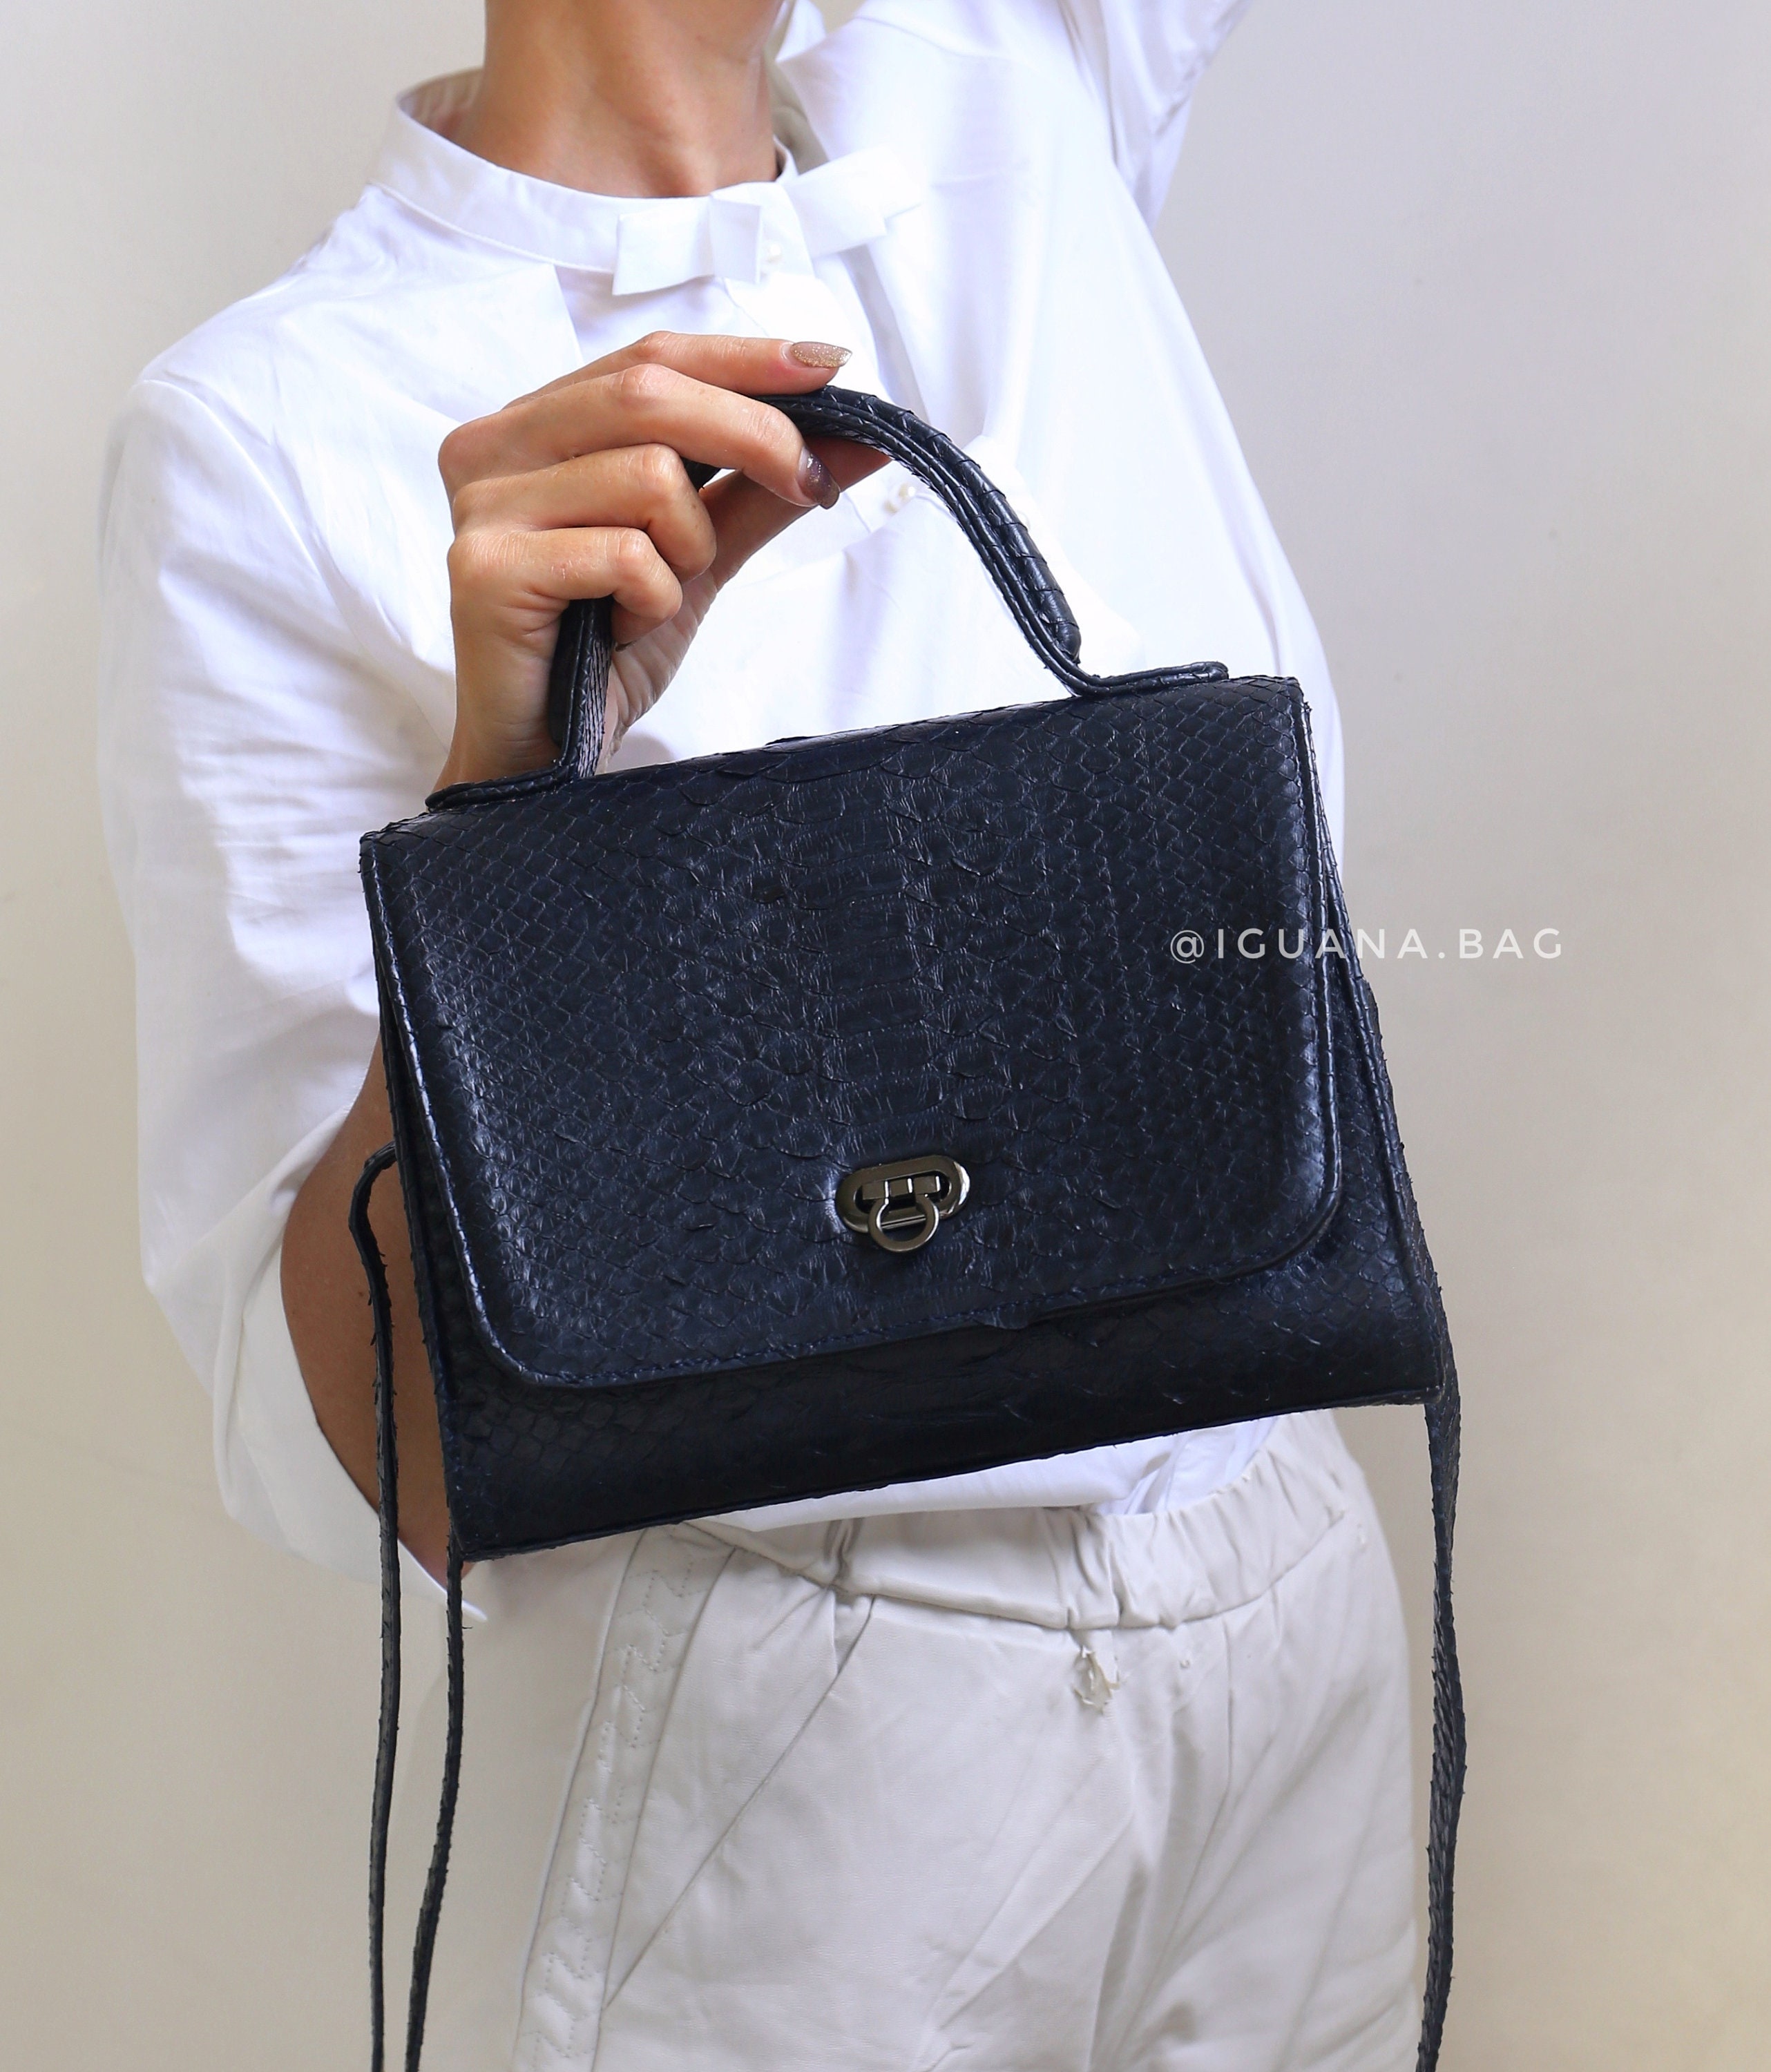 Snake skin designer handbag for women Genuine Python leather | Etsy